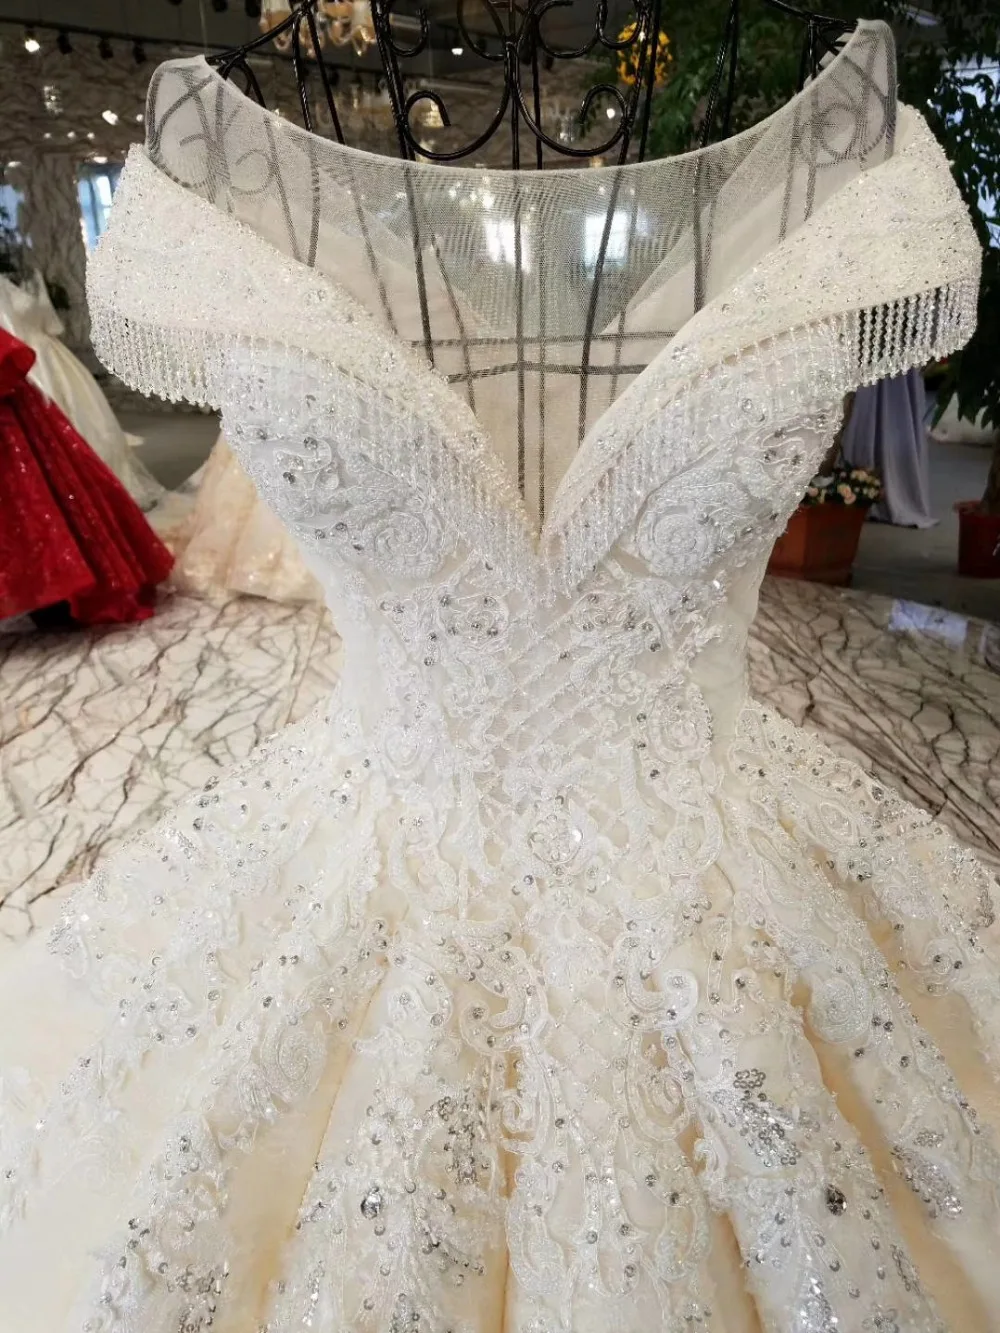 AOLANES Robe De Mariage Роскошные платья невесты 2018 свадебные с королевским шлейфом